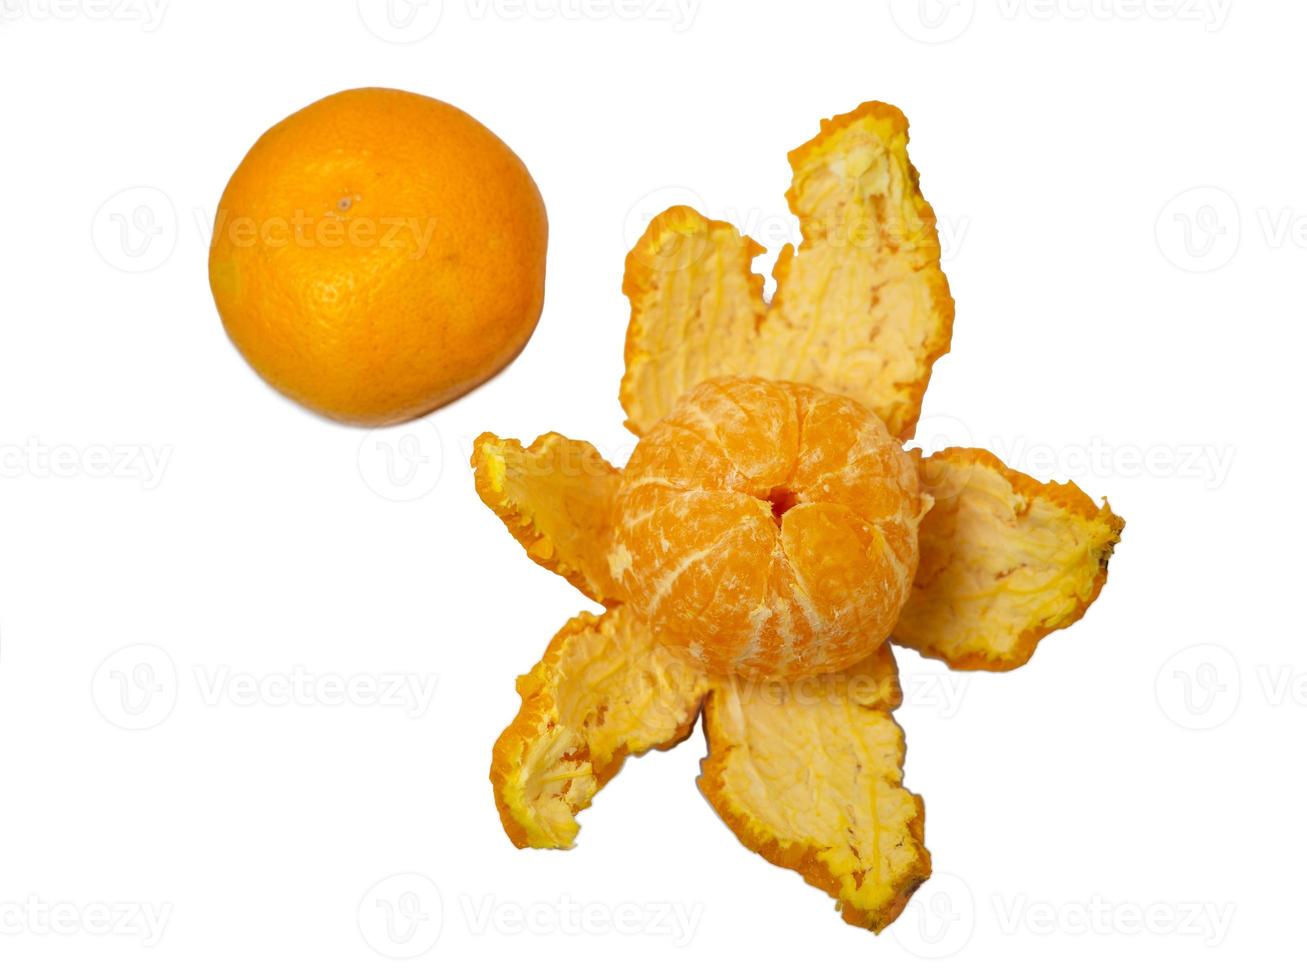 halvöppen mandarin och hela mandarin . peeling mandarin. foto